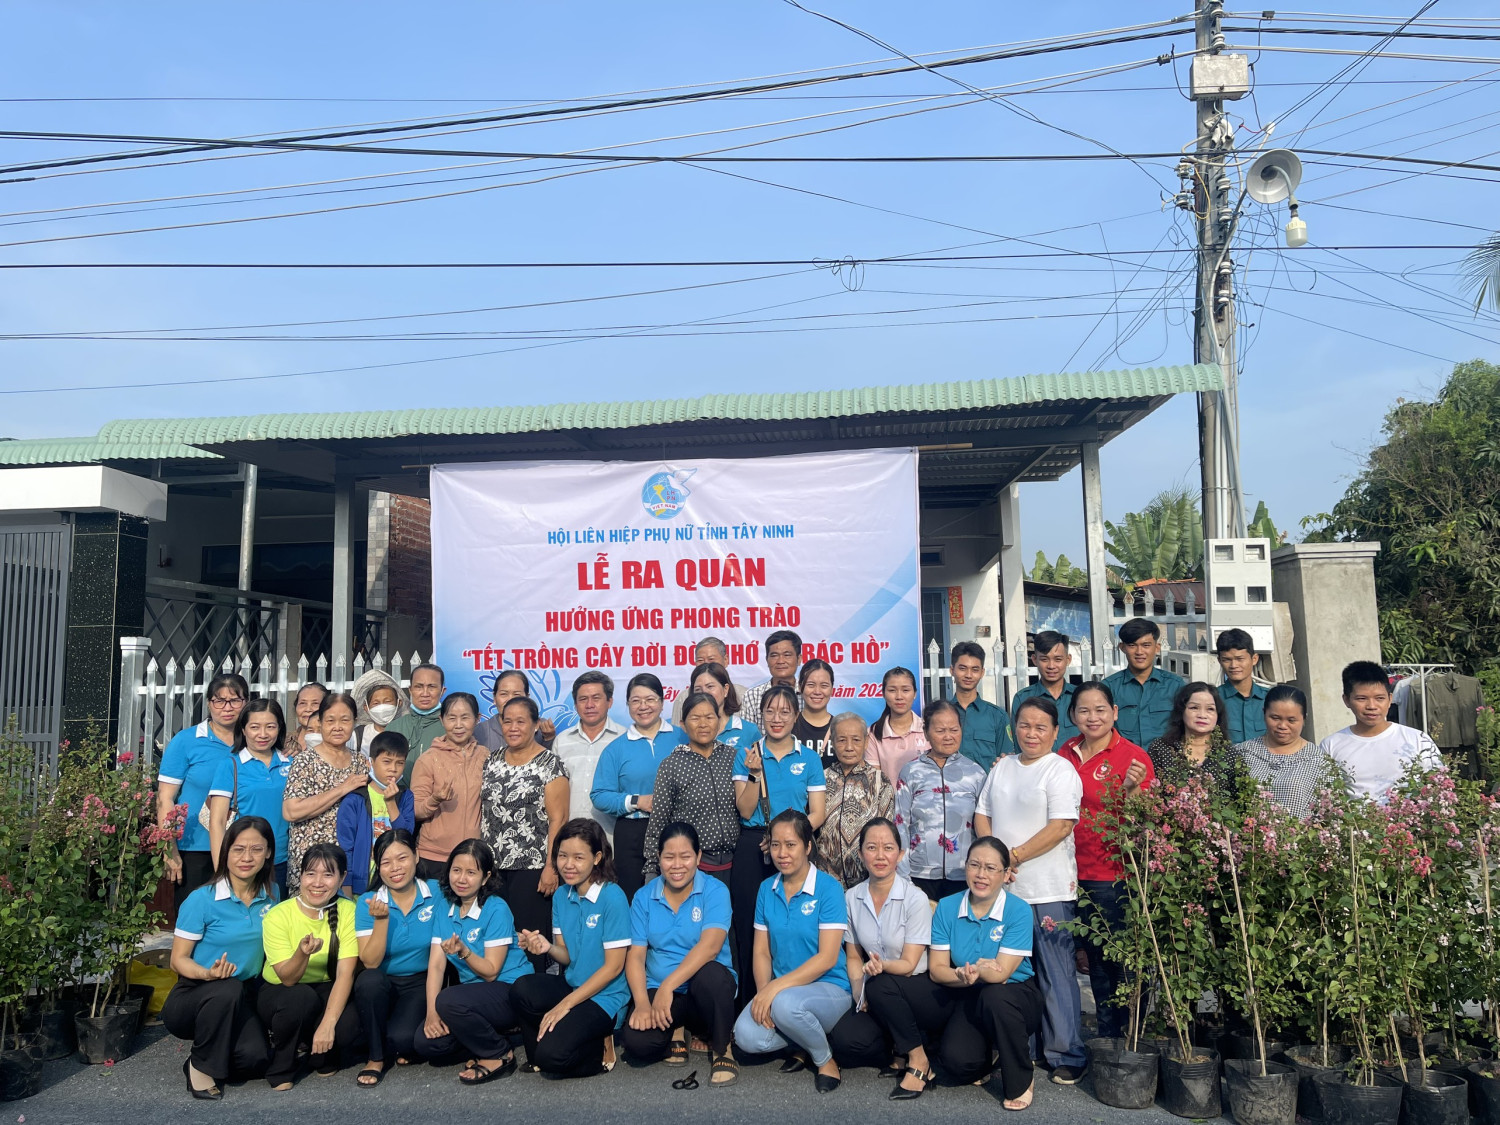 Hội LHPN tỉnh Tây Ninh tổ chức lễ ra quân hưởng ứng phong trào "Tết trồng cây đời đời nhớ ơn Bác Hồ" tại khu phố Ninh Hòa, phường Ninh Thạnh, thành phố Tây Ninh.